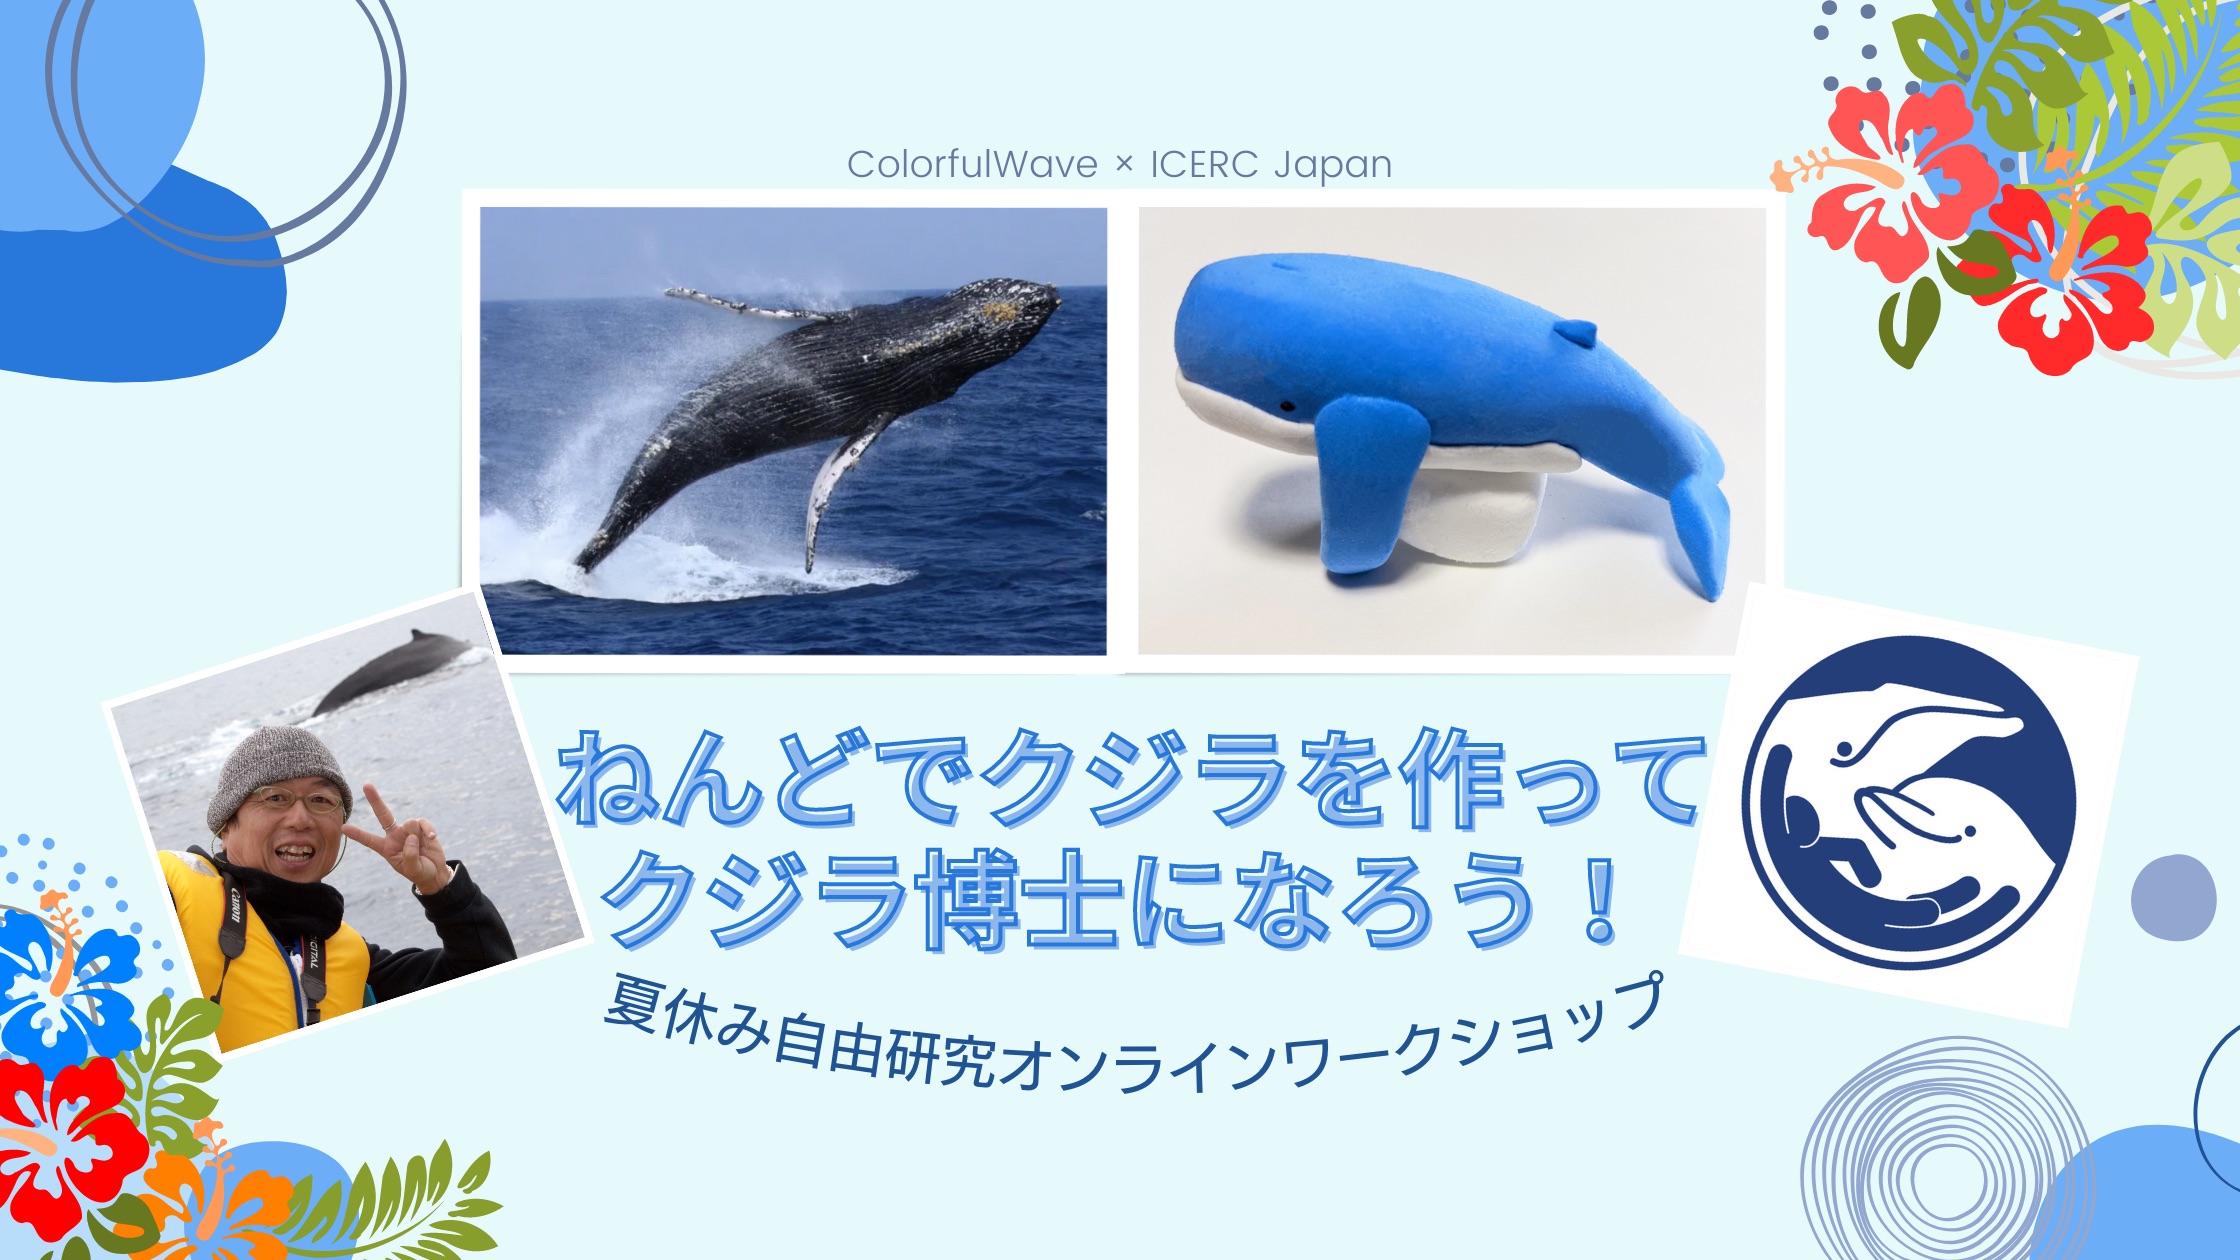 ねんどでクジラを作ってクジラ博士になろう 夏休み自由研究オンラインワークショップ 22 7 30 Icerc Japan